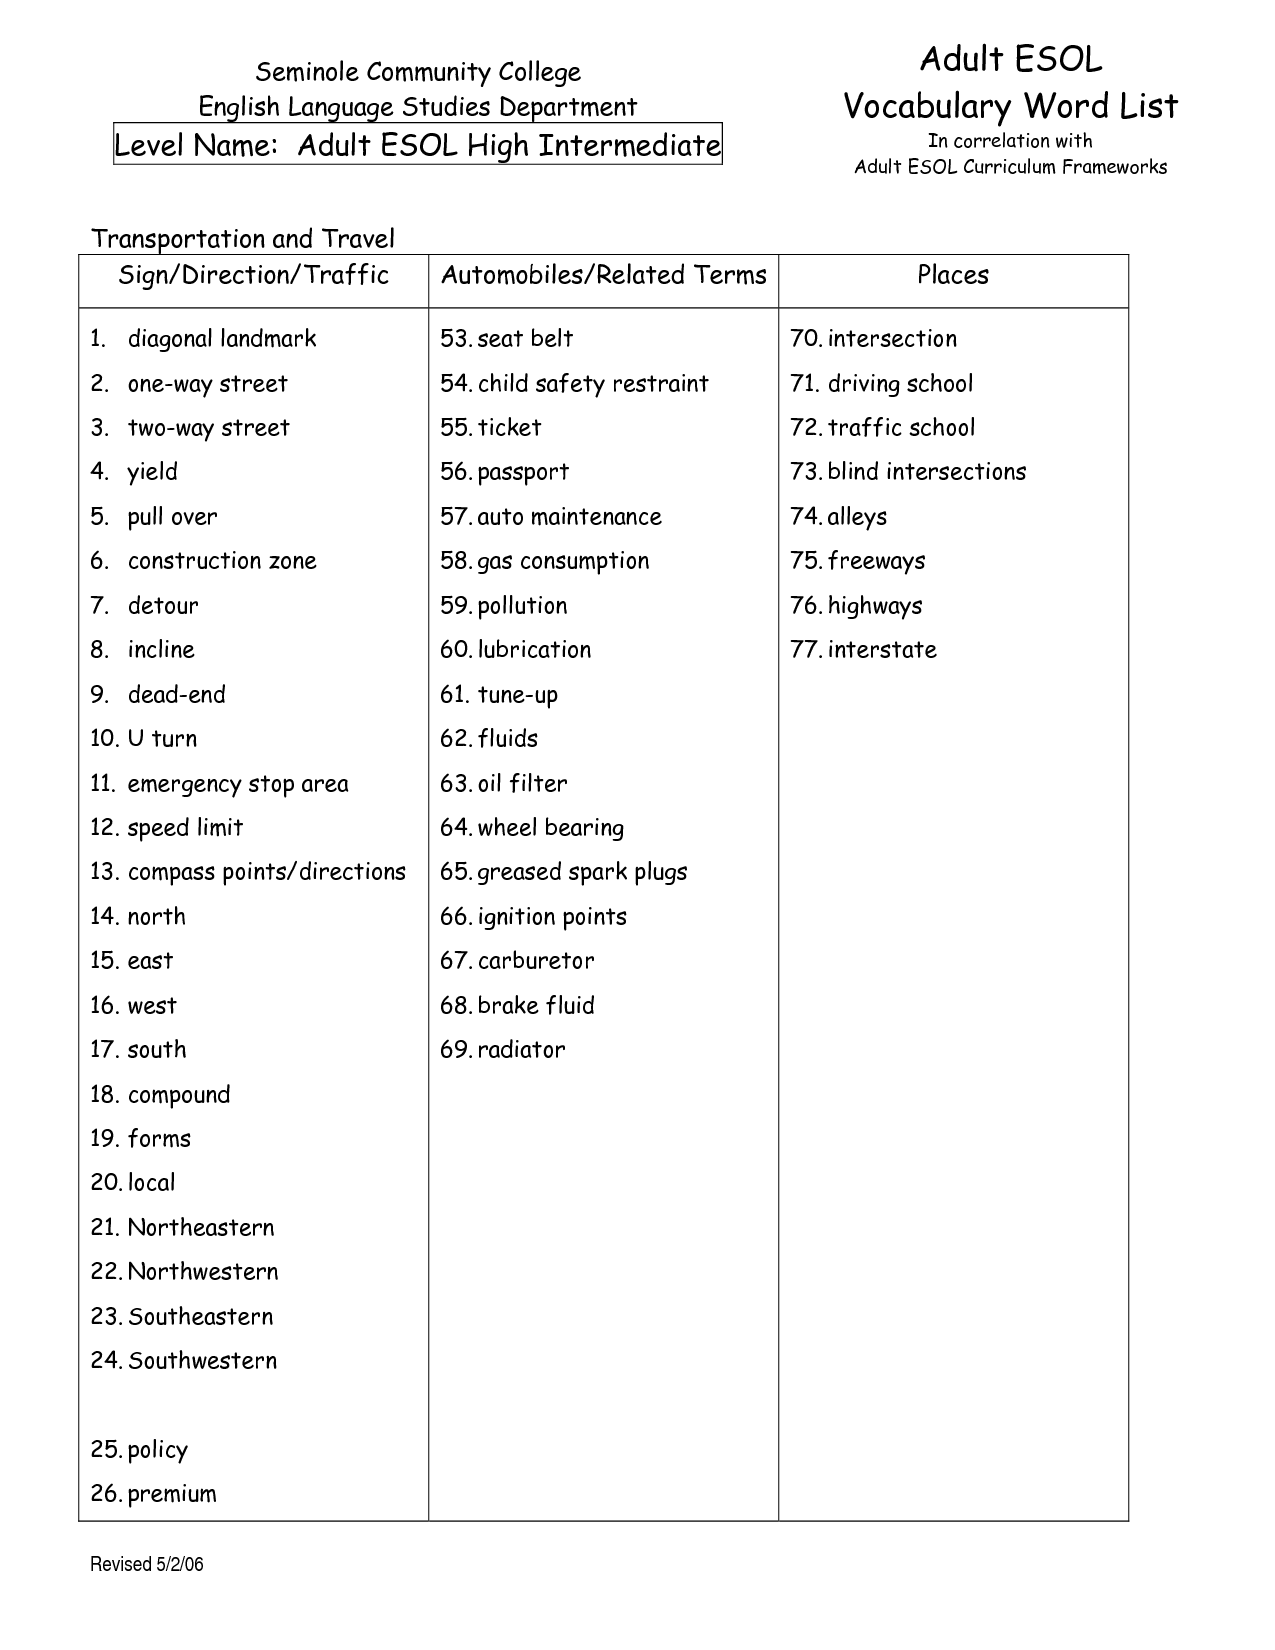 Adult ESL Vocabulary Worksheets Image